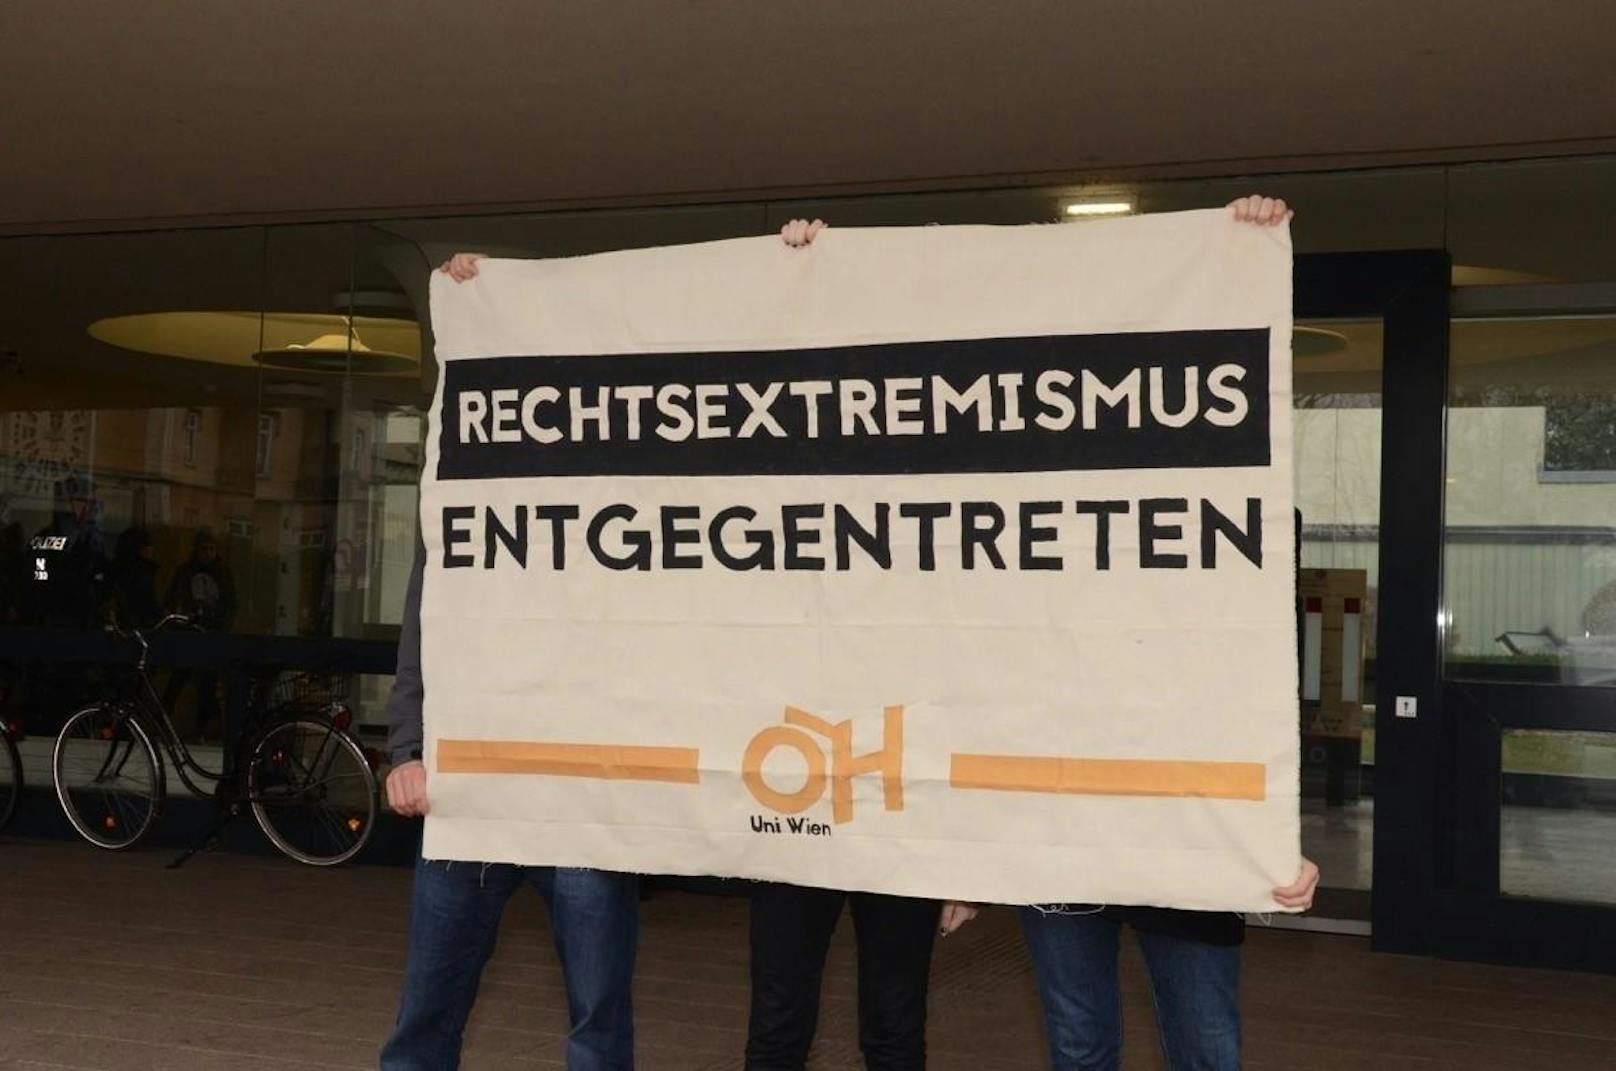 Die Österreichische Hochschülerschaft (ÖH) ist ebenfalls vor Ort und zeigt Flagge gegen Rechtsextremismus.